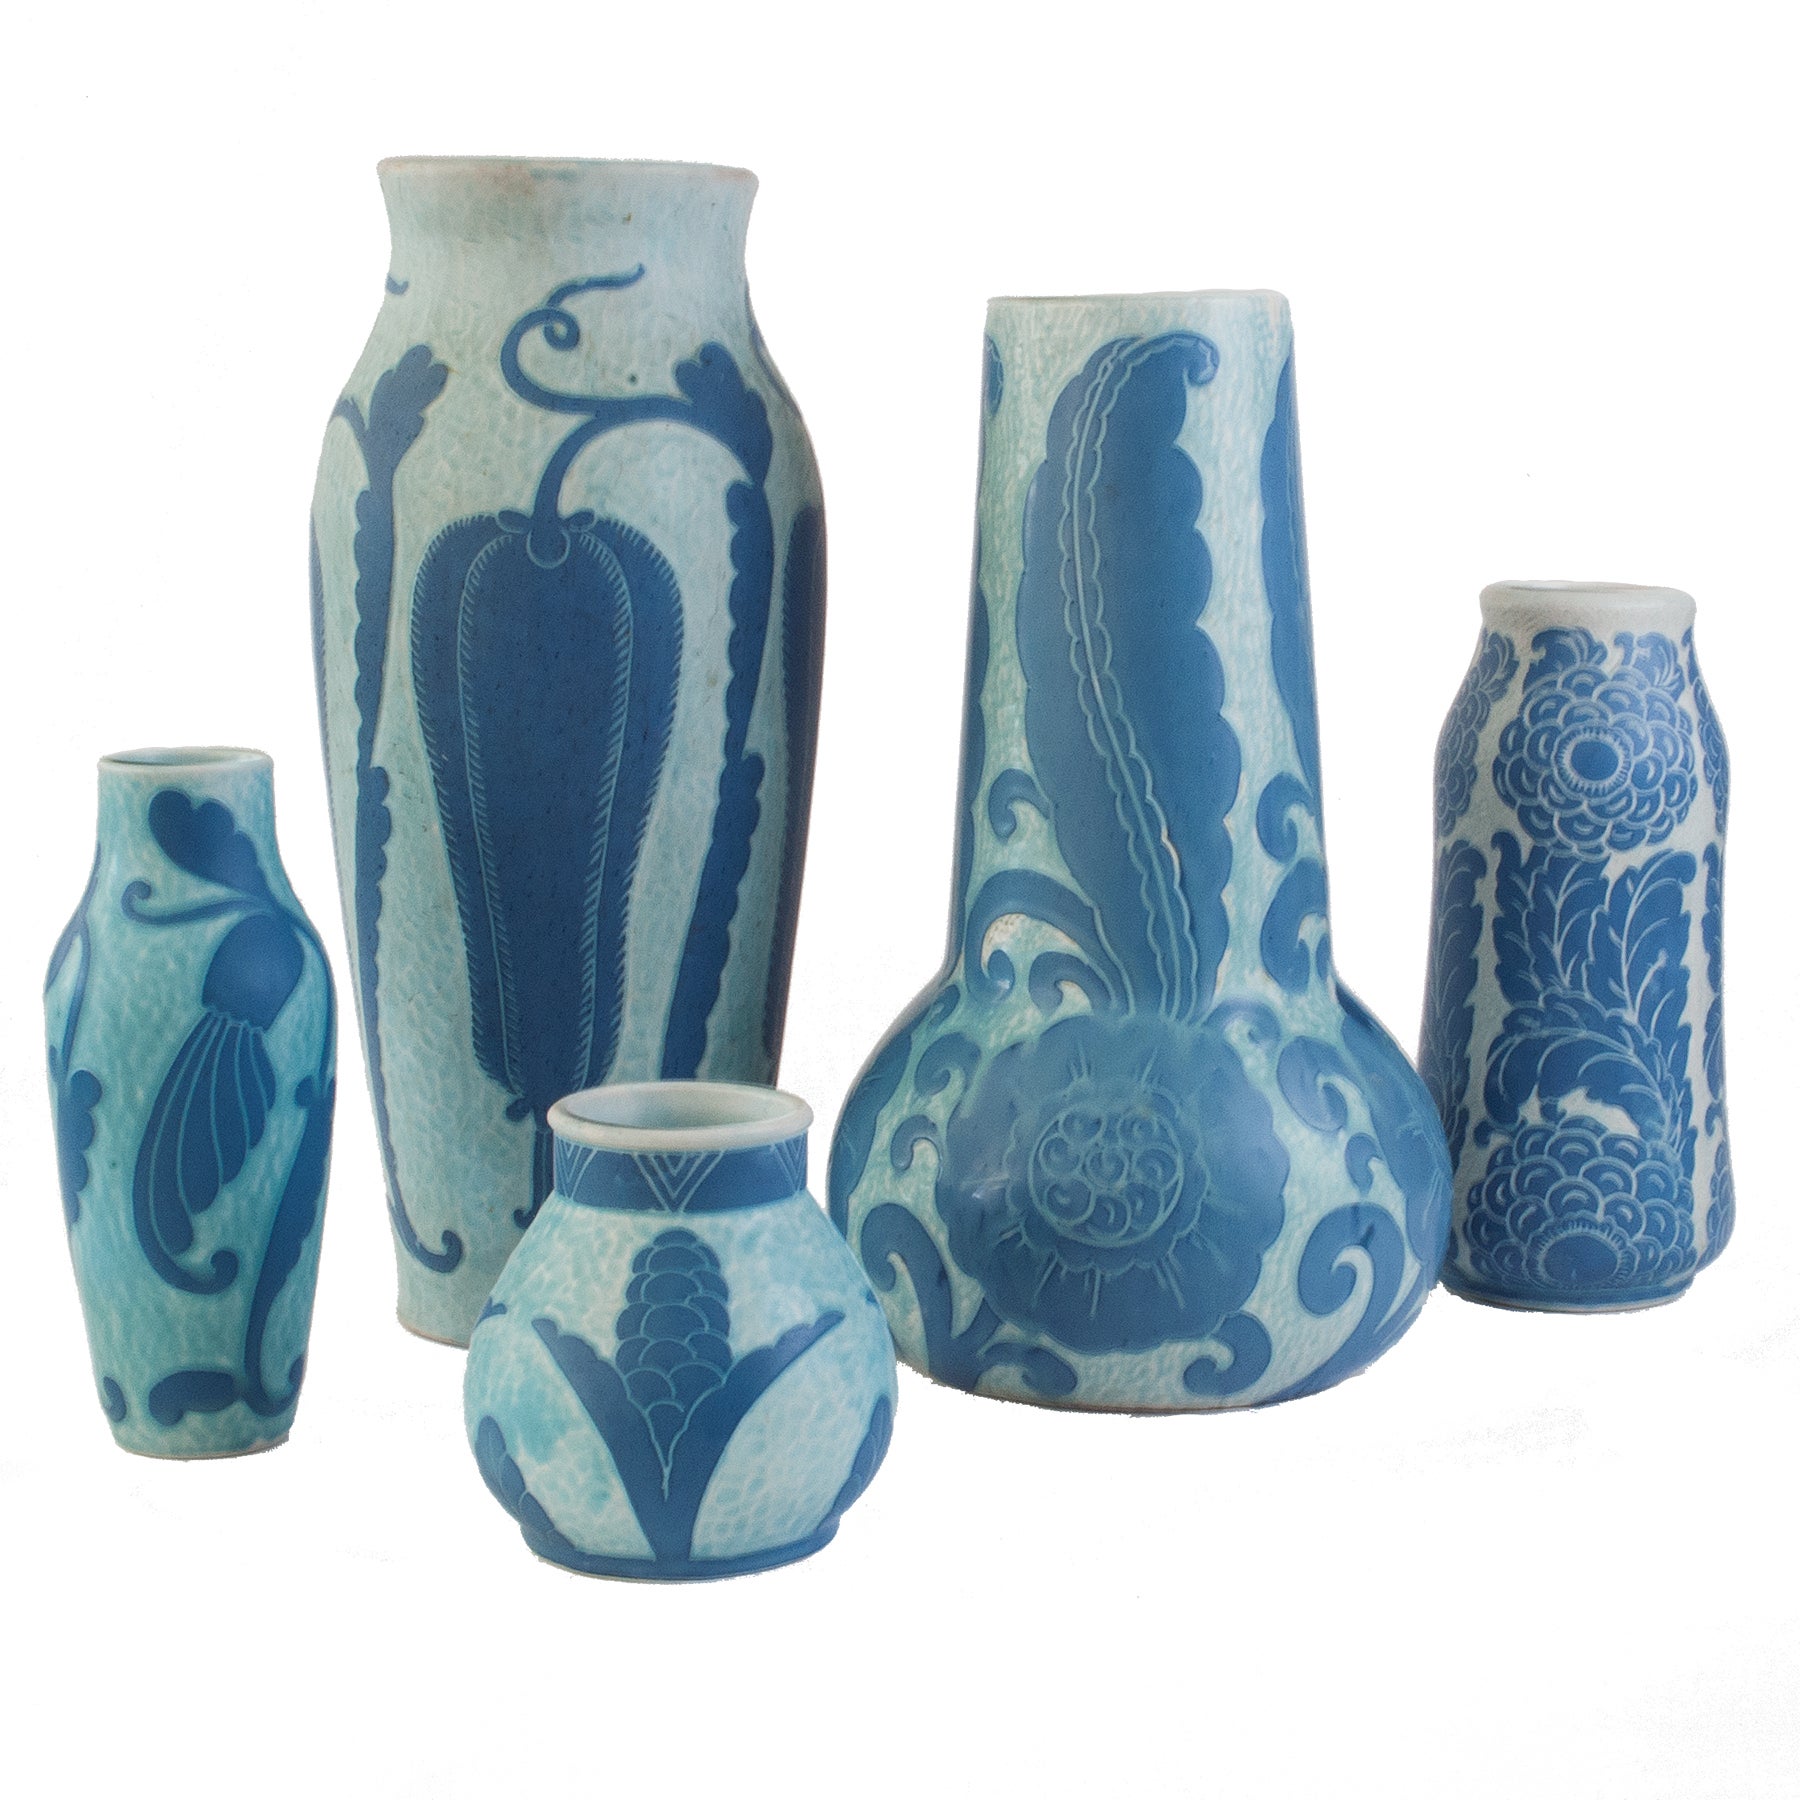 Swedish Art Deco "Sgraffito" Vases by Josef Ekberg for Gustavsberg